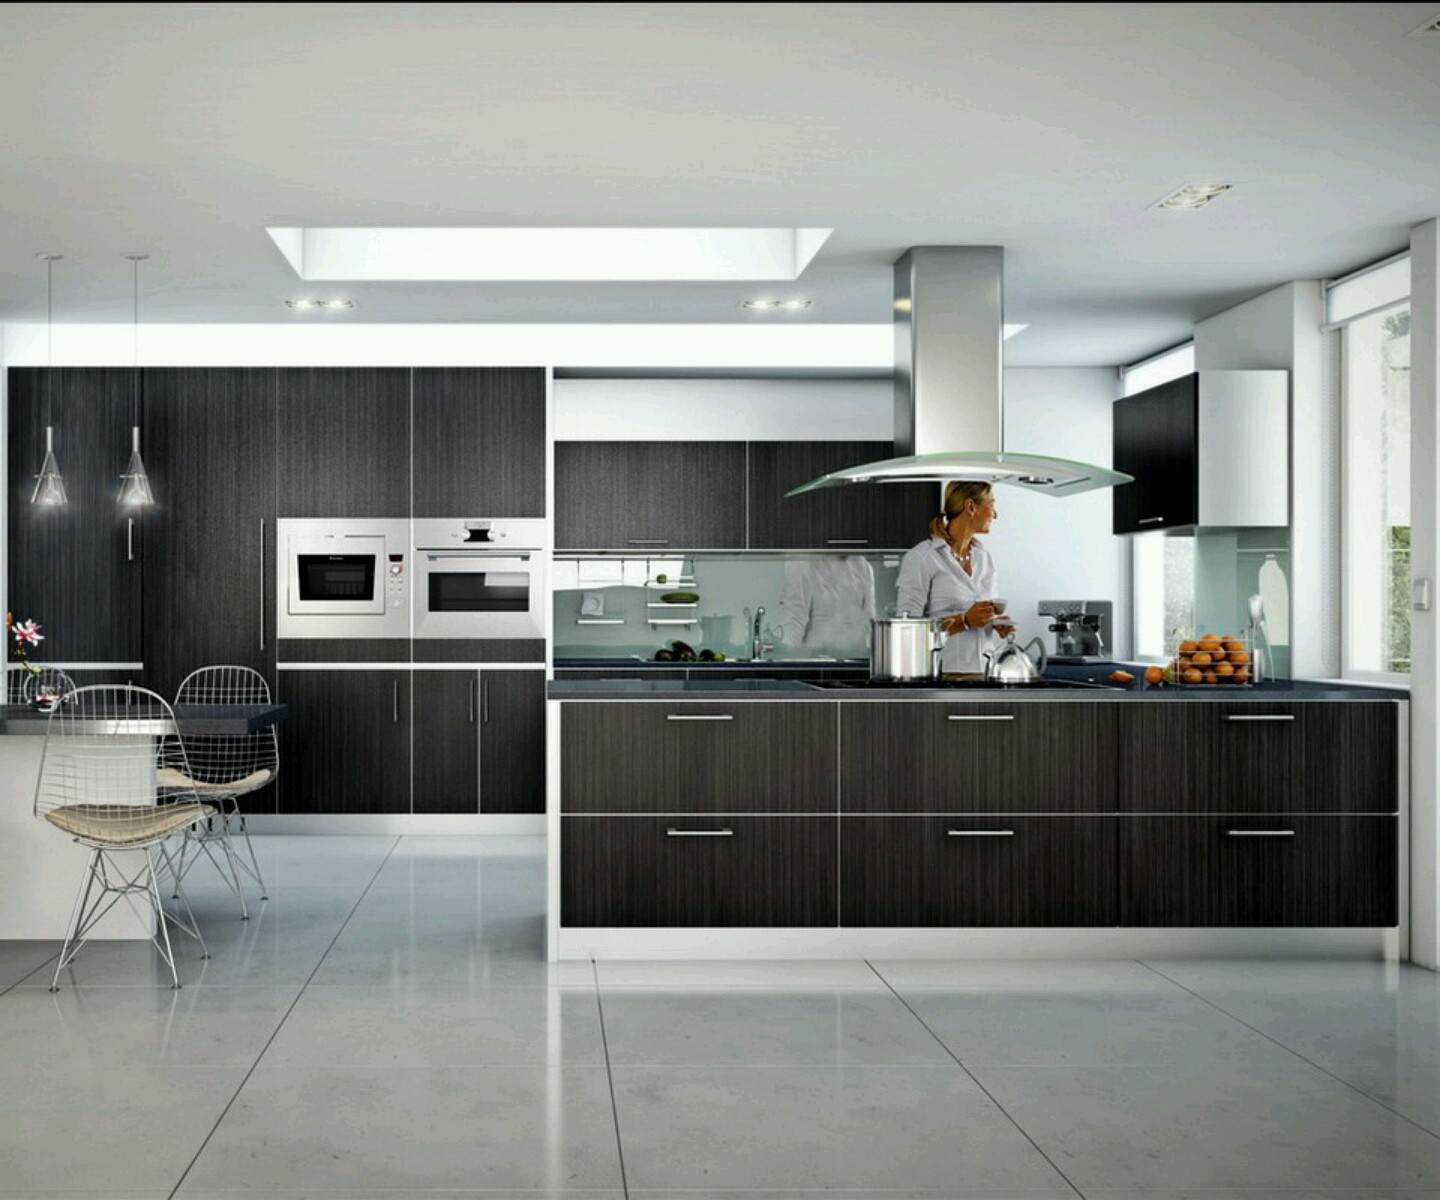 Best ideas about Modern Kitchen Decor
. Save or Pin 30 Modern Kitchen Design Ideas Now.